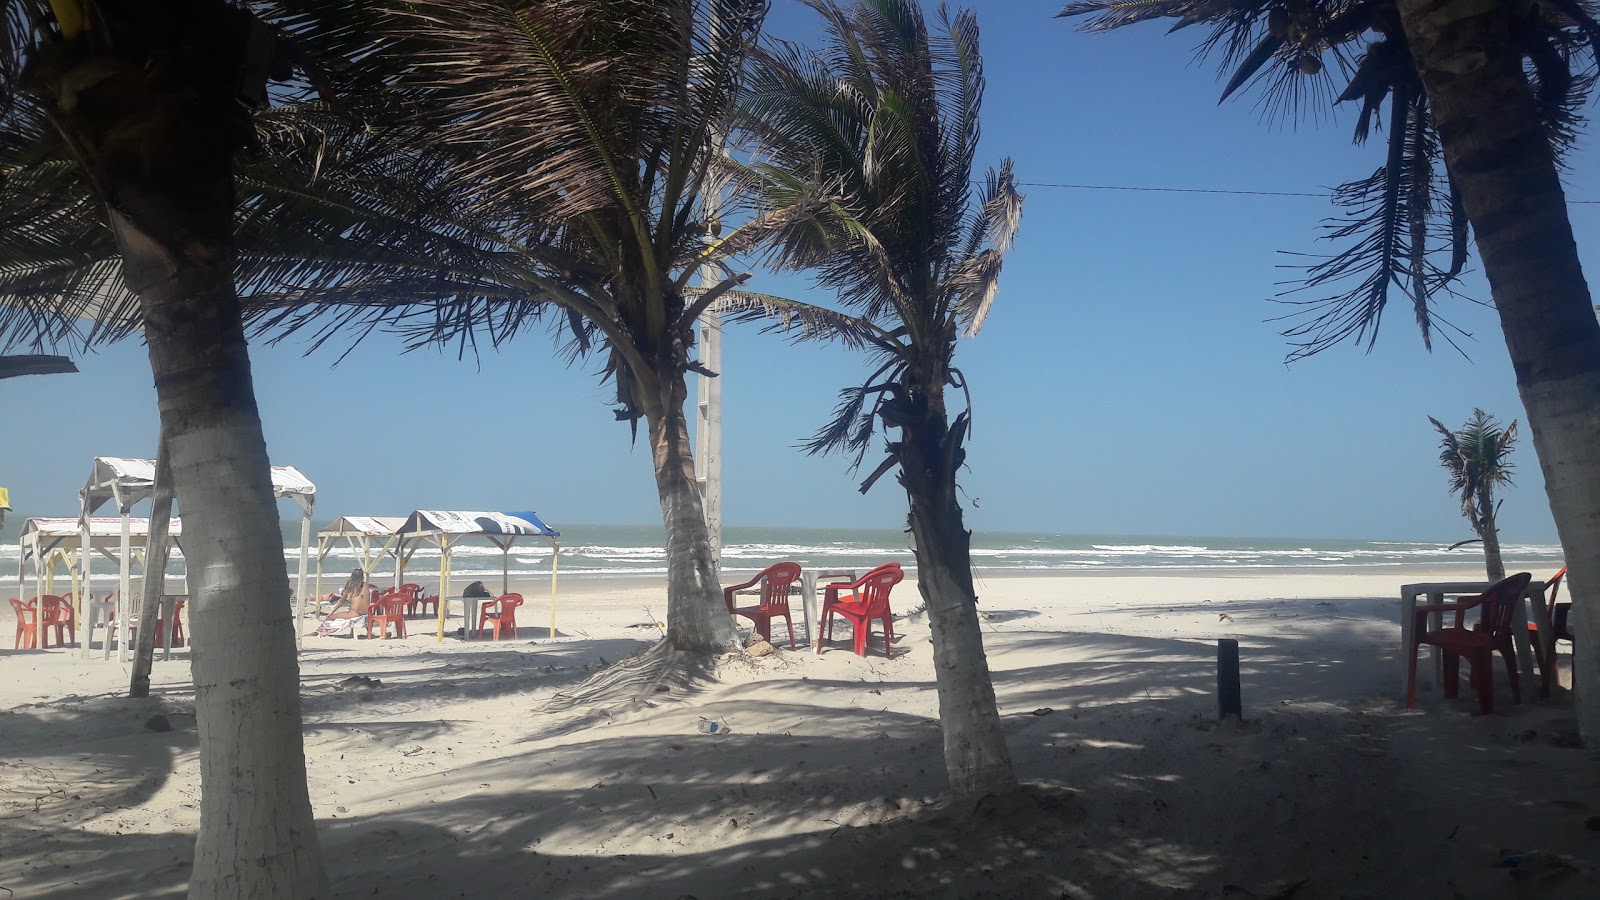 Praia Do Olho Dagua'in fotoğrafı kısa ve düz ile birlikte